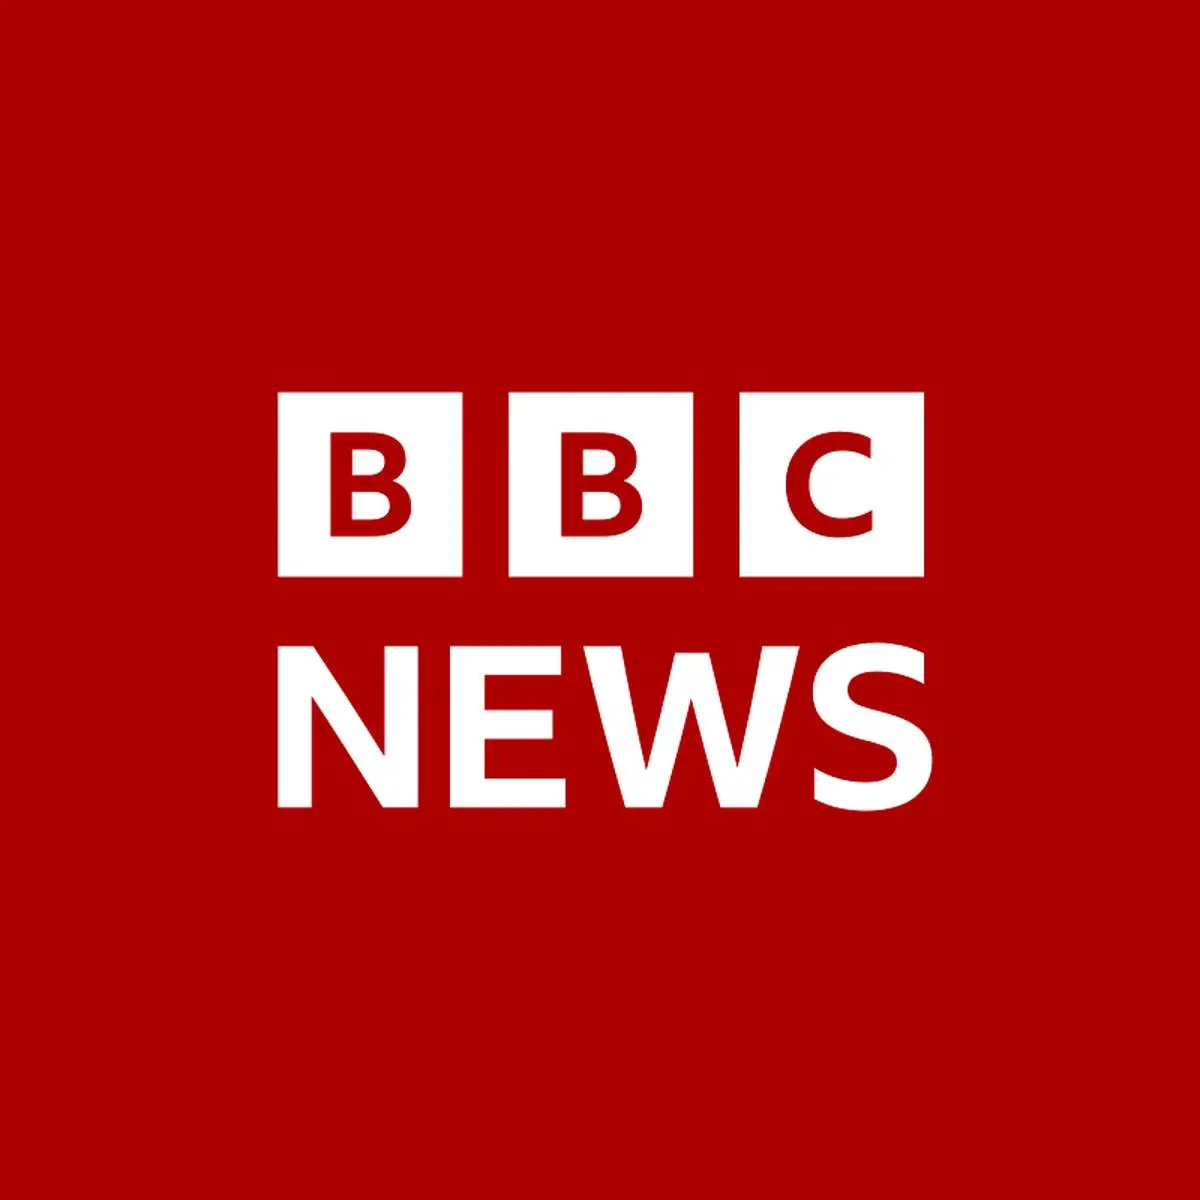 افشای صوت جنجالی از BBC | برنامه دشمن برای تجزیه ایران لو رفت!